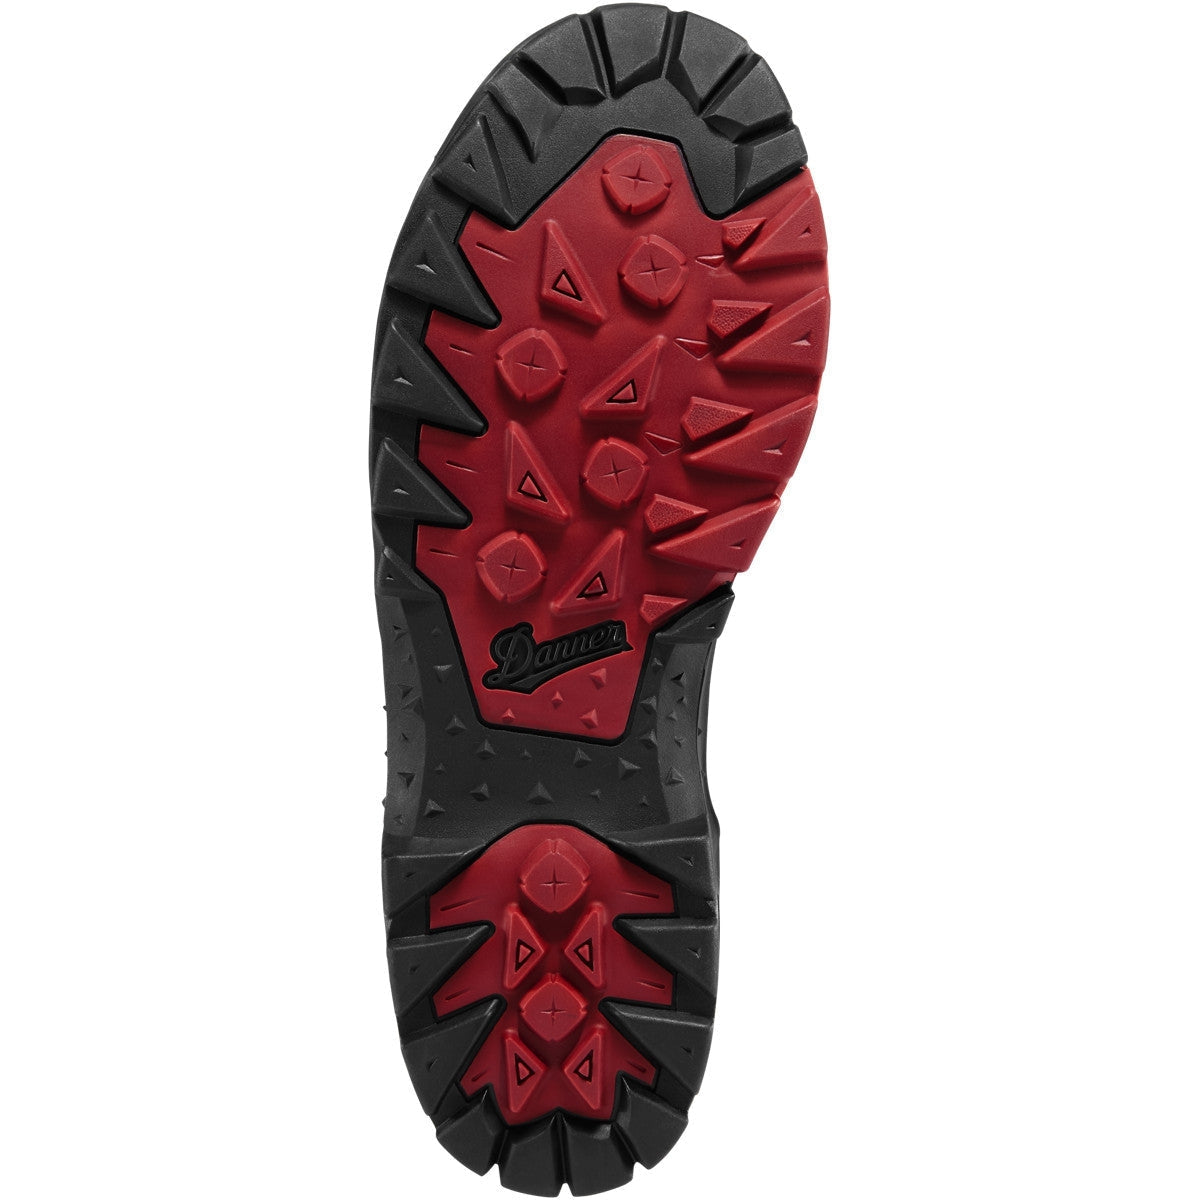 Danner Men's Panorama 6" Waterproof Hiking Shoe - Brown/Red - 63433  - Overlook Boots